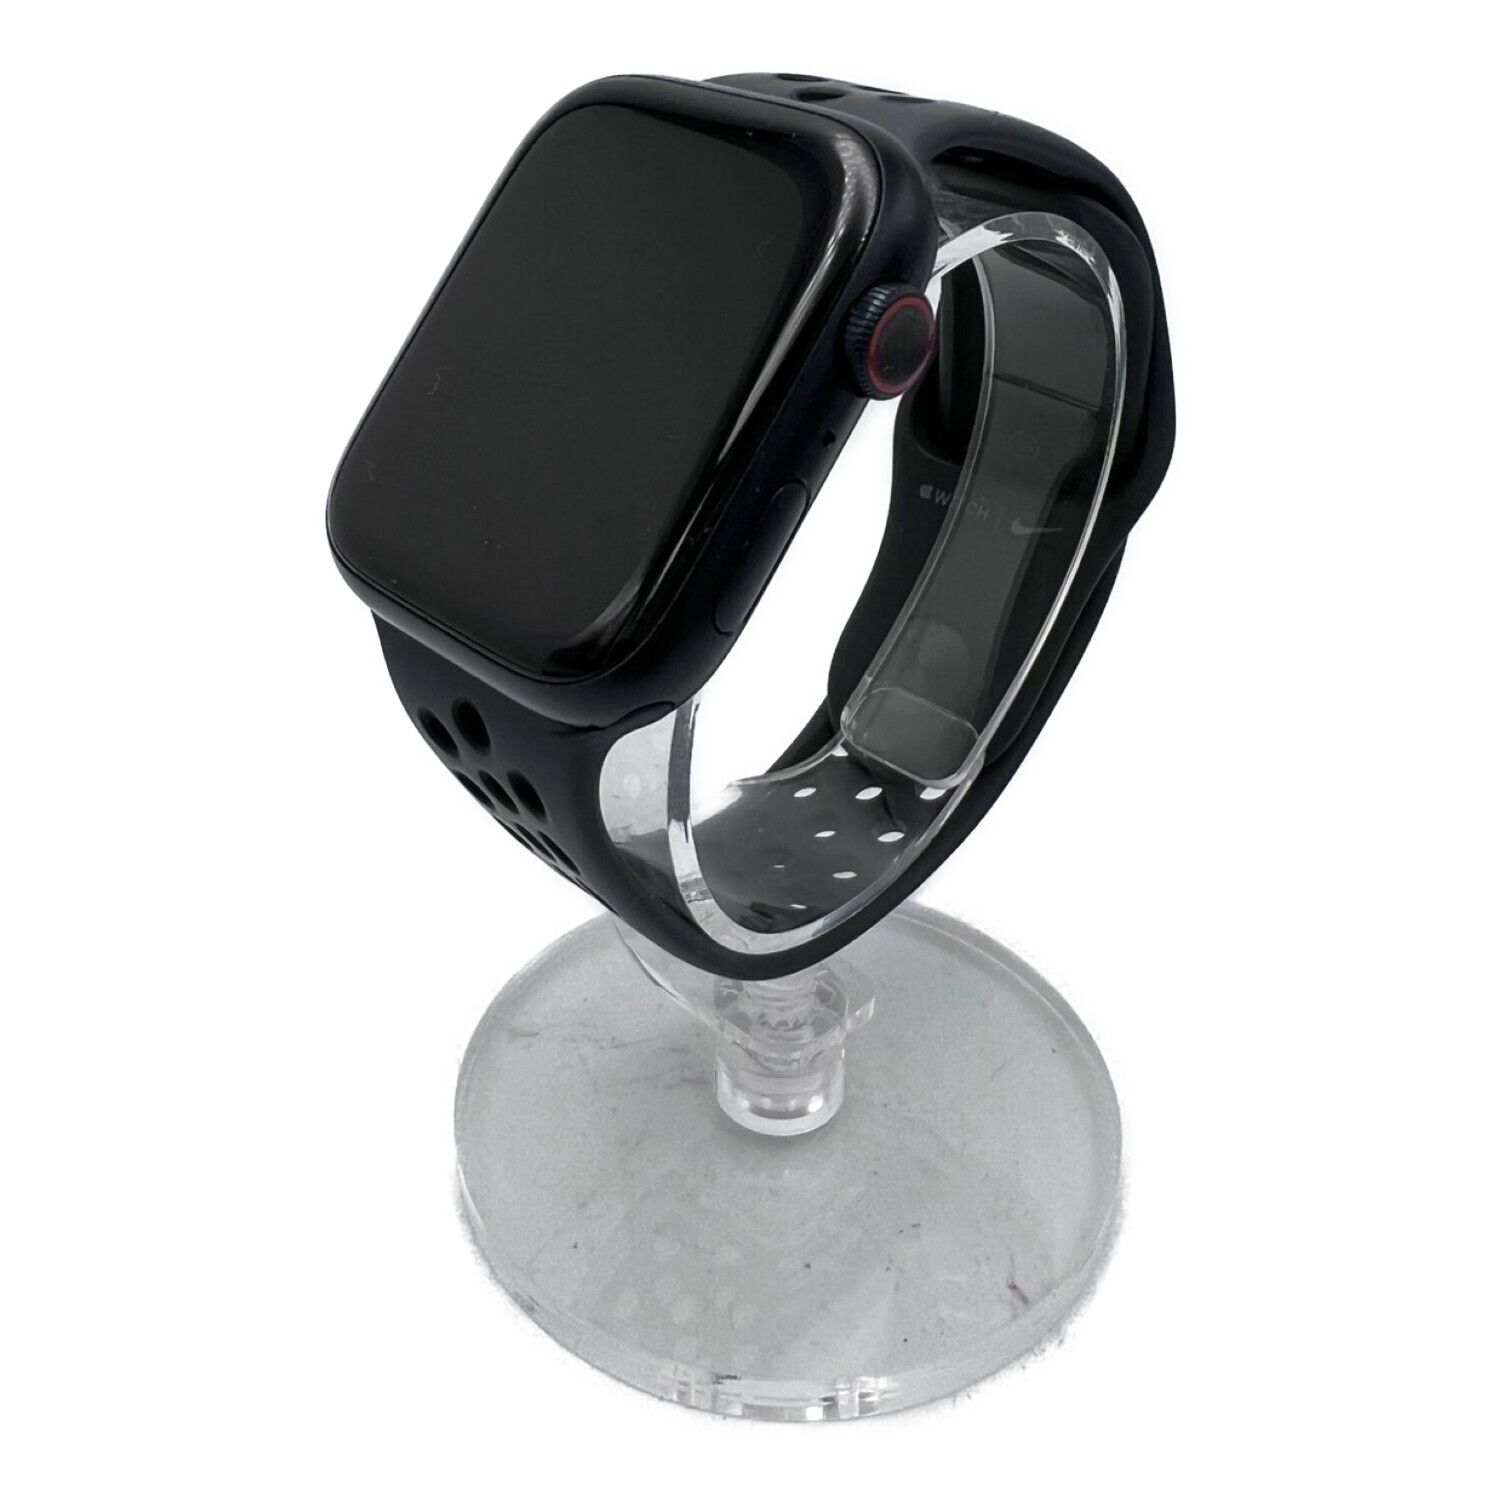 Apple Watch Nike+ Series 4 GPSモデル

未使用